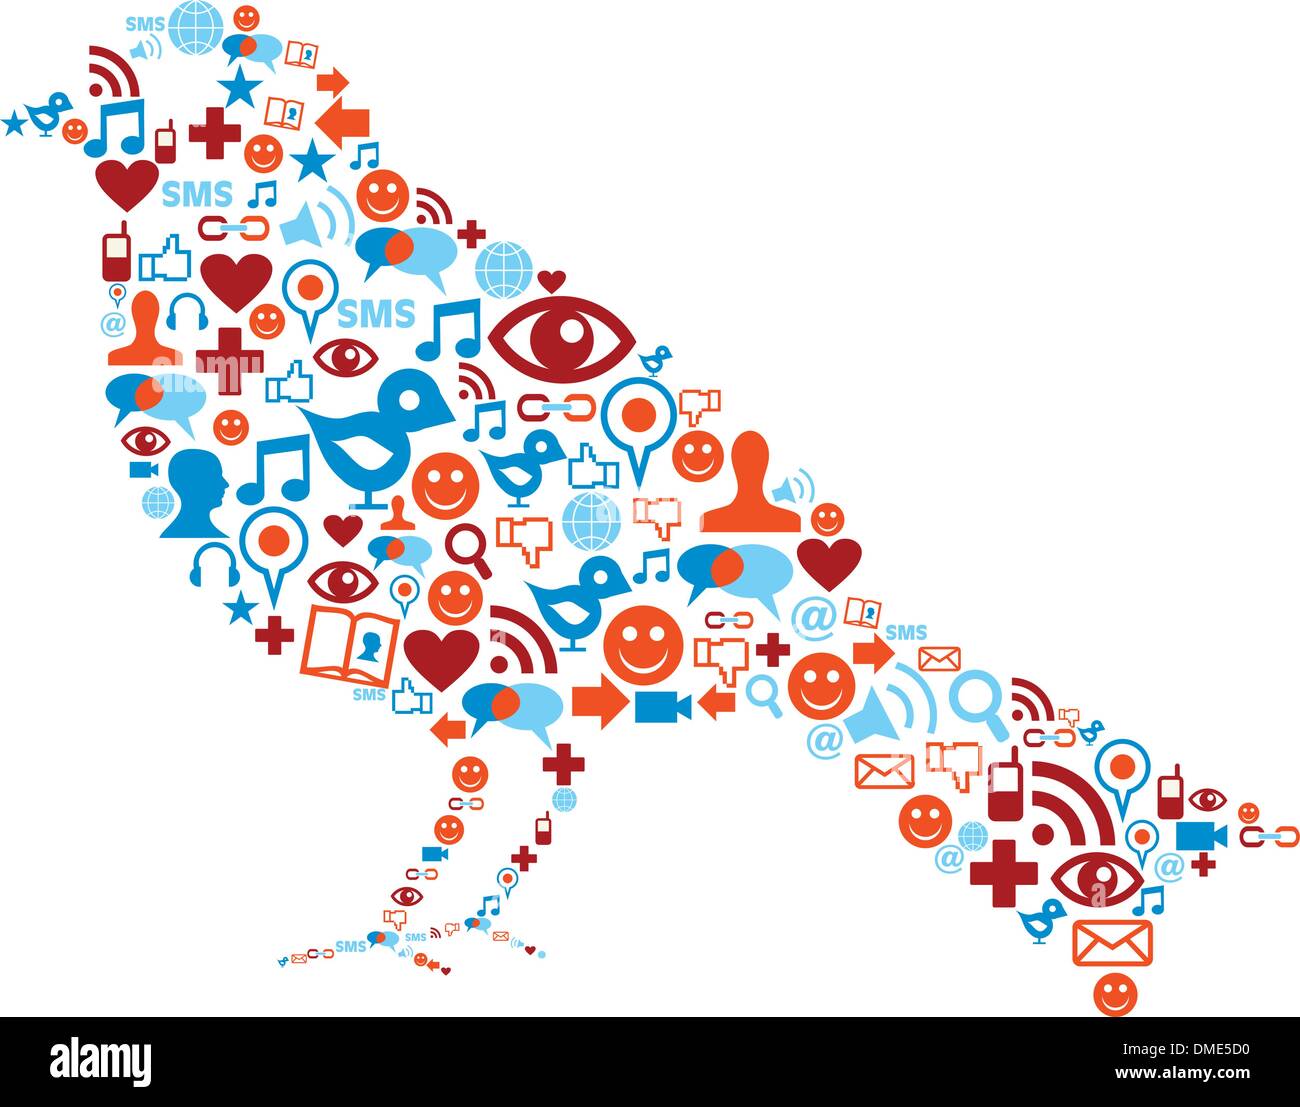 Social media icons set in bird composition Stock Vector